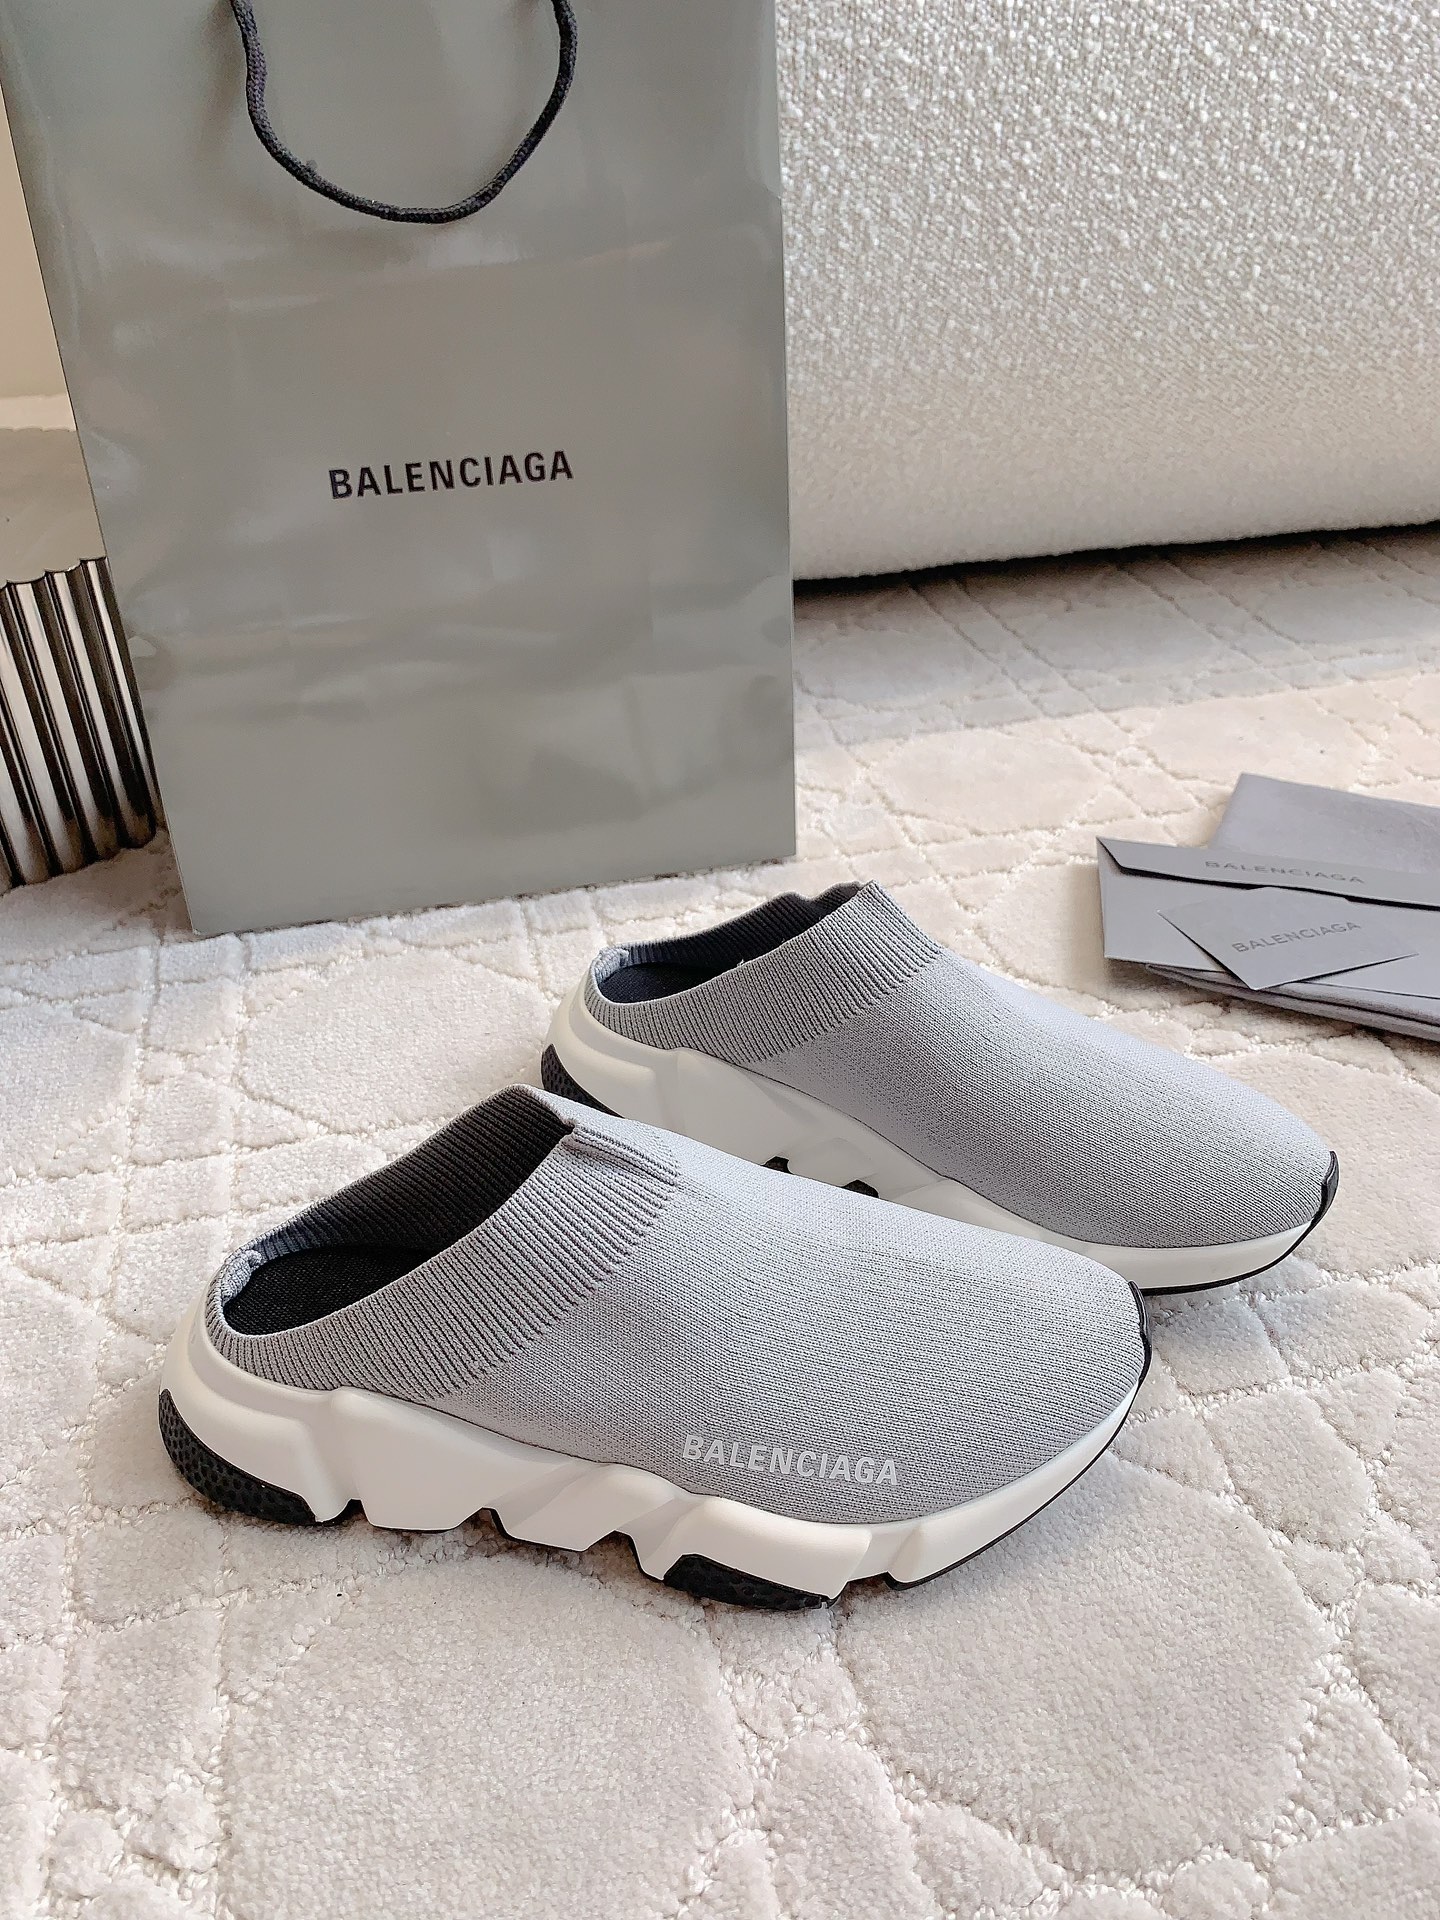 海外セレブが愛用する balenciaga 靴 レディース偽物 スリッパ 履くのが簡単で 男女兼用 シンプル 軽量 グレイ_3